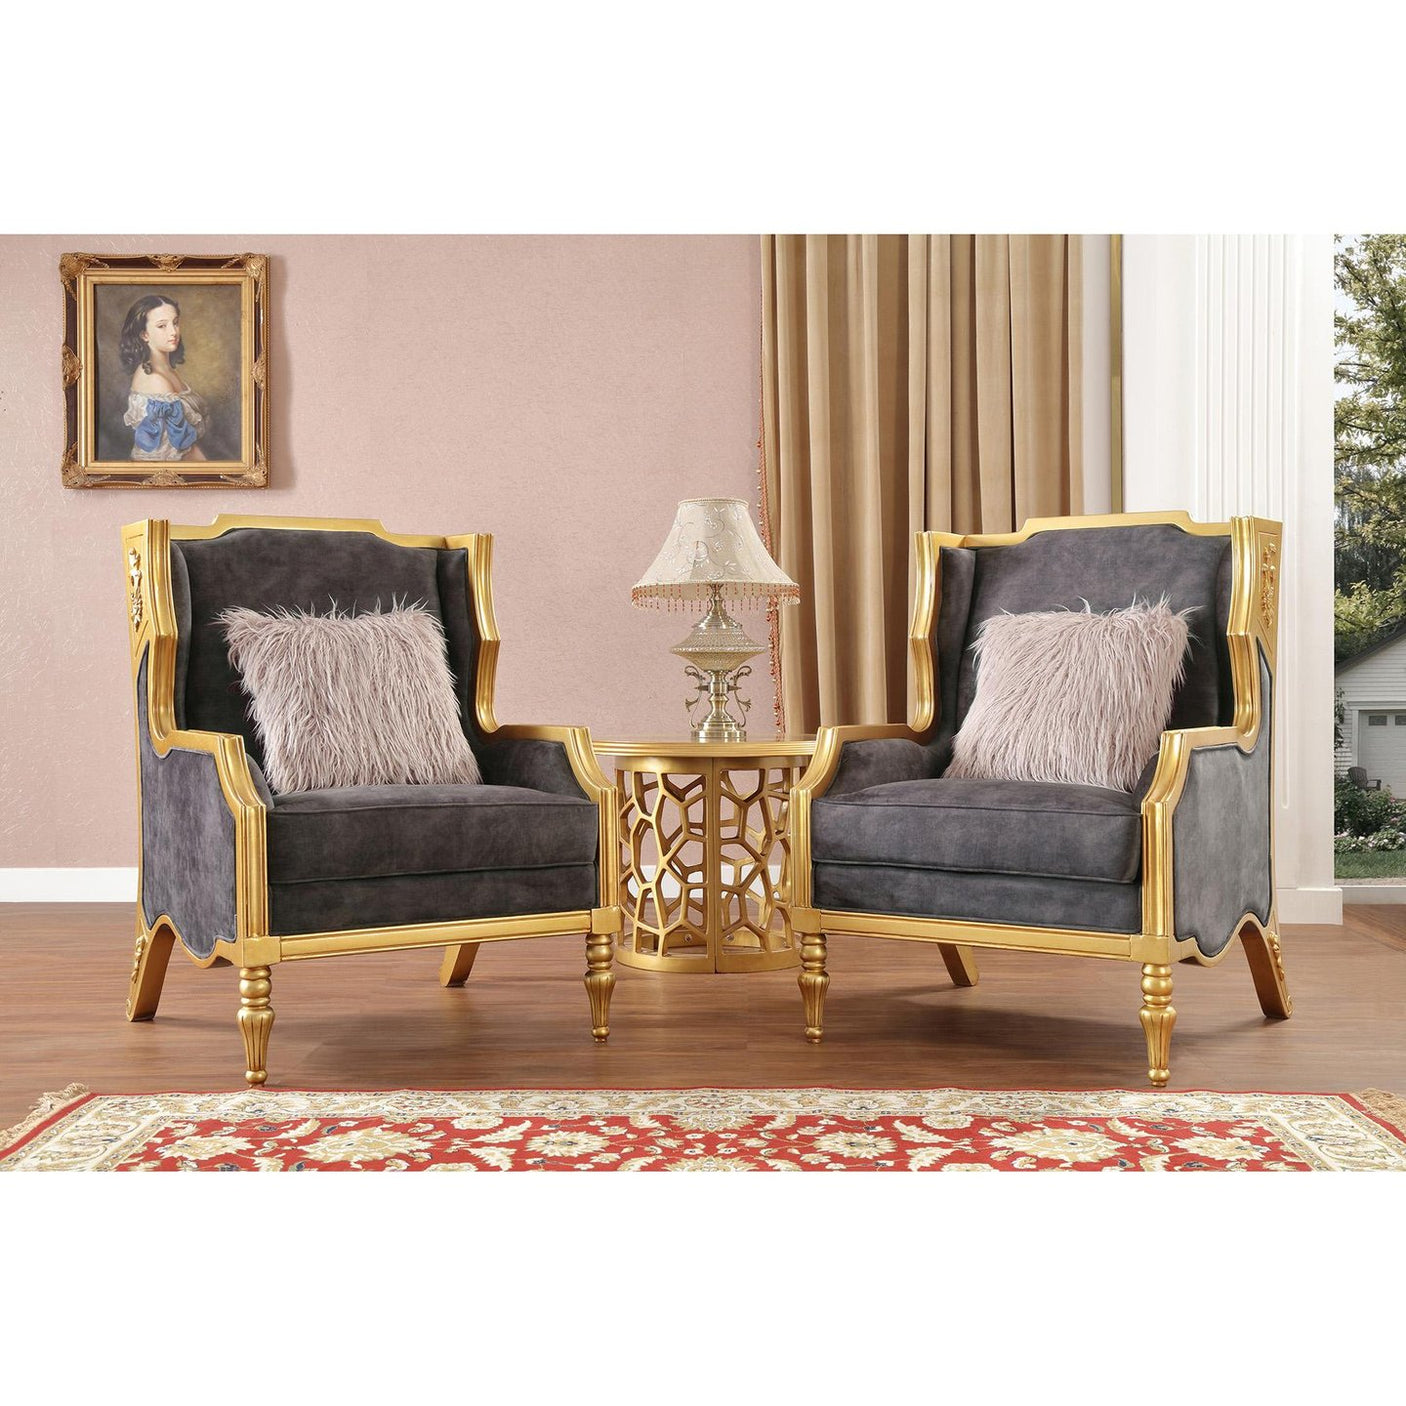 HD-3053 Traditional Living Room Set in Cobalt Blue Velvet & Gold Finish by Homey Design - Home Elegance USA Homey Design Furniture